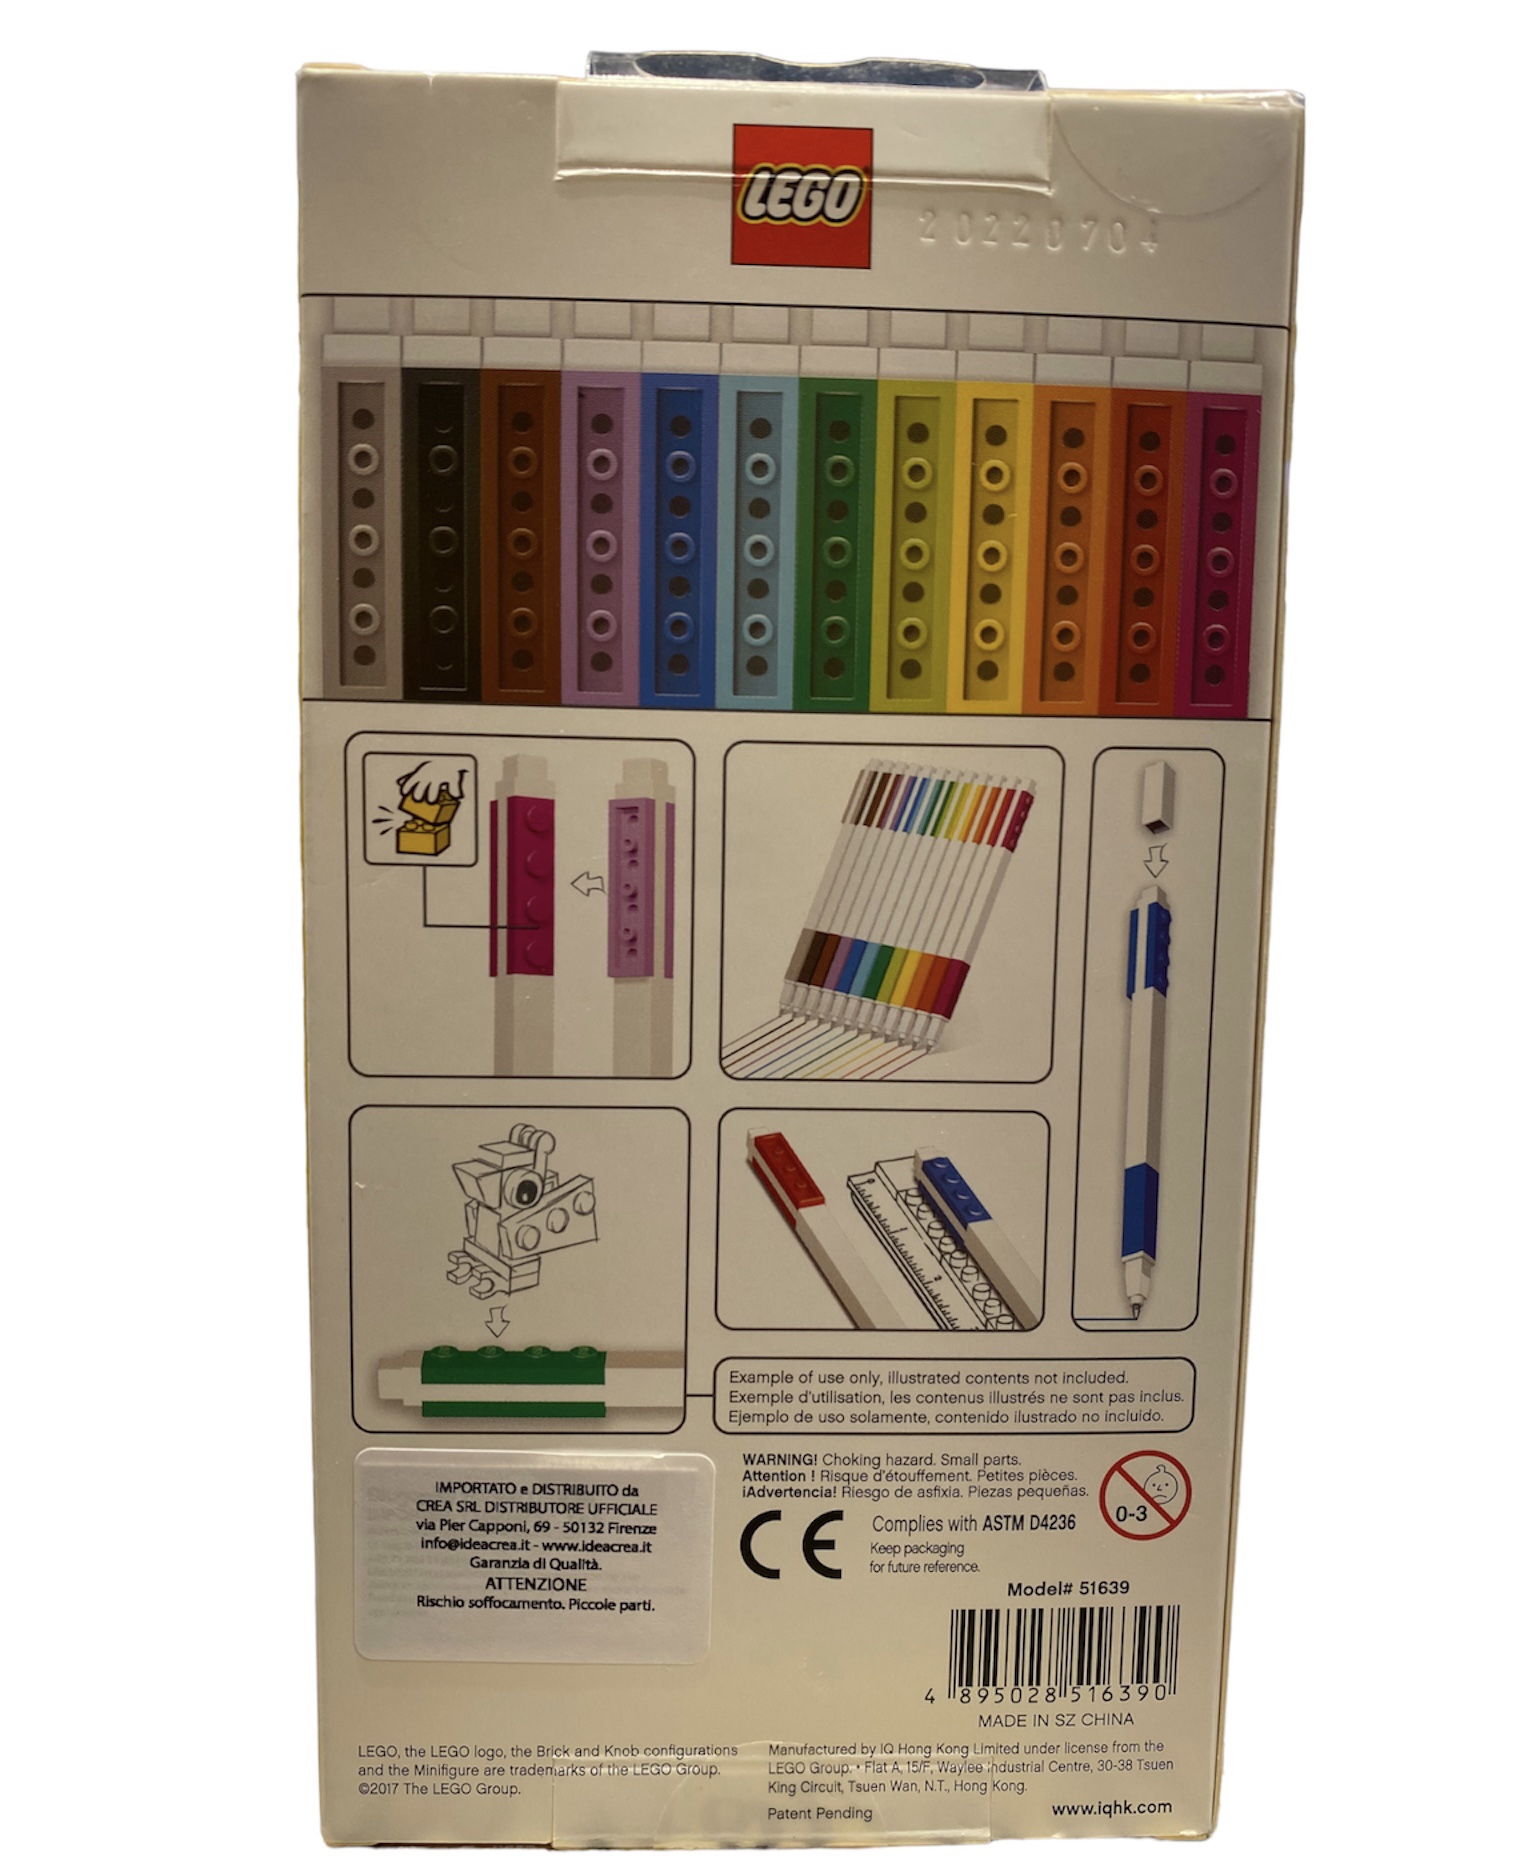 Set 12 penne gel LEGO - Oggettivamente